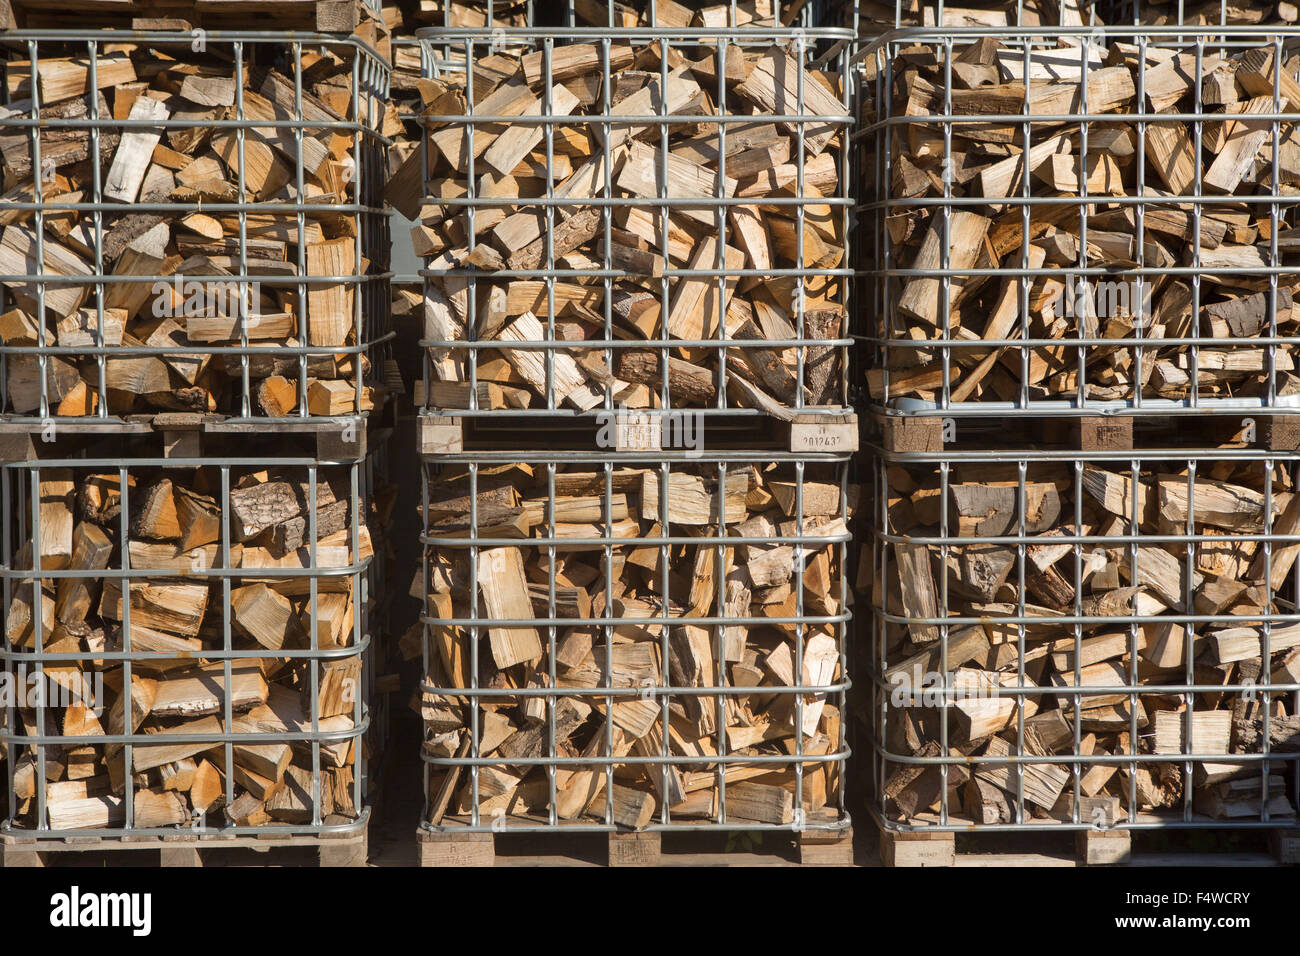 Bois de chauffage, un poids dans les cages palettes Photo Stock - Alamy